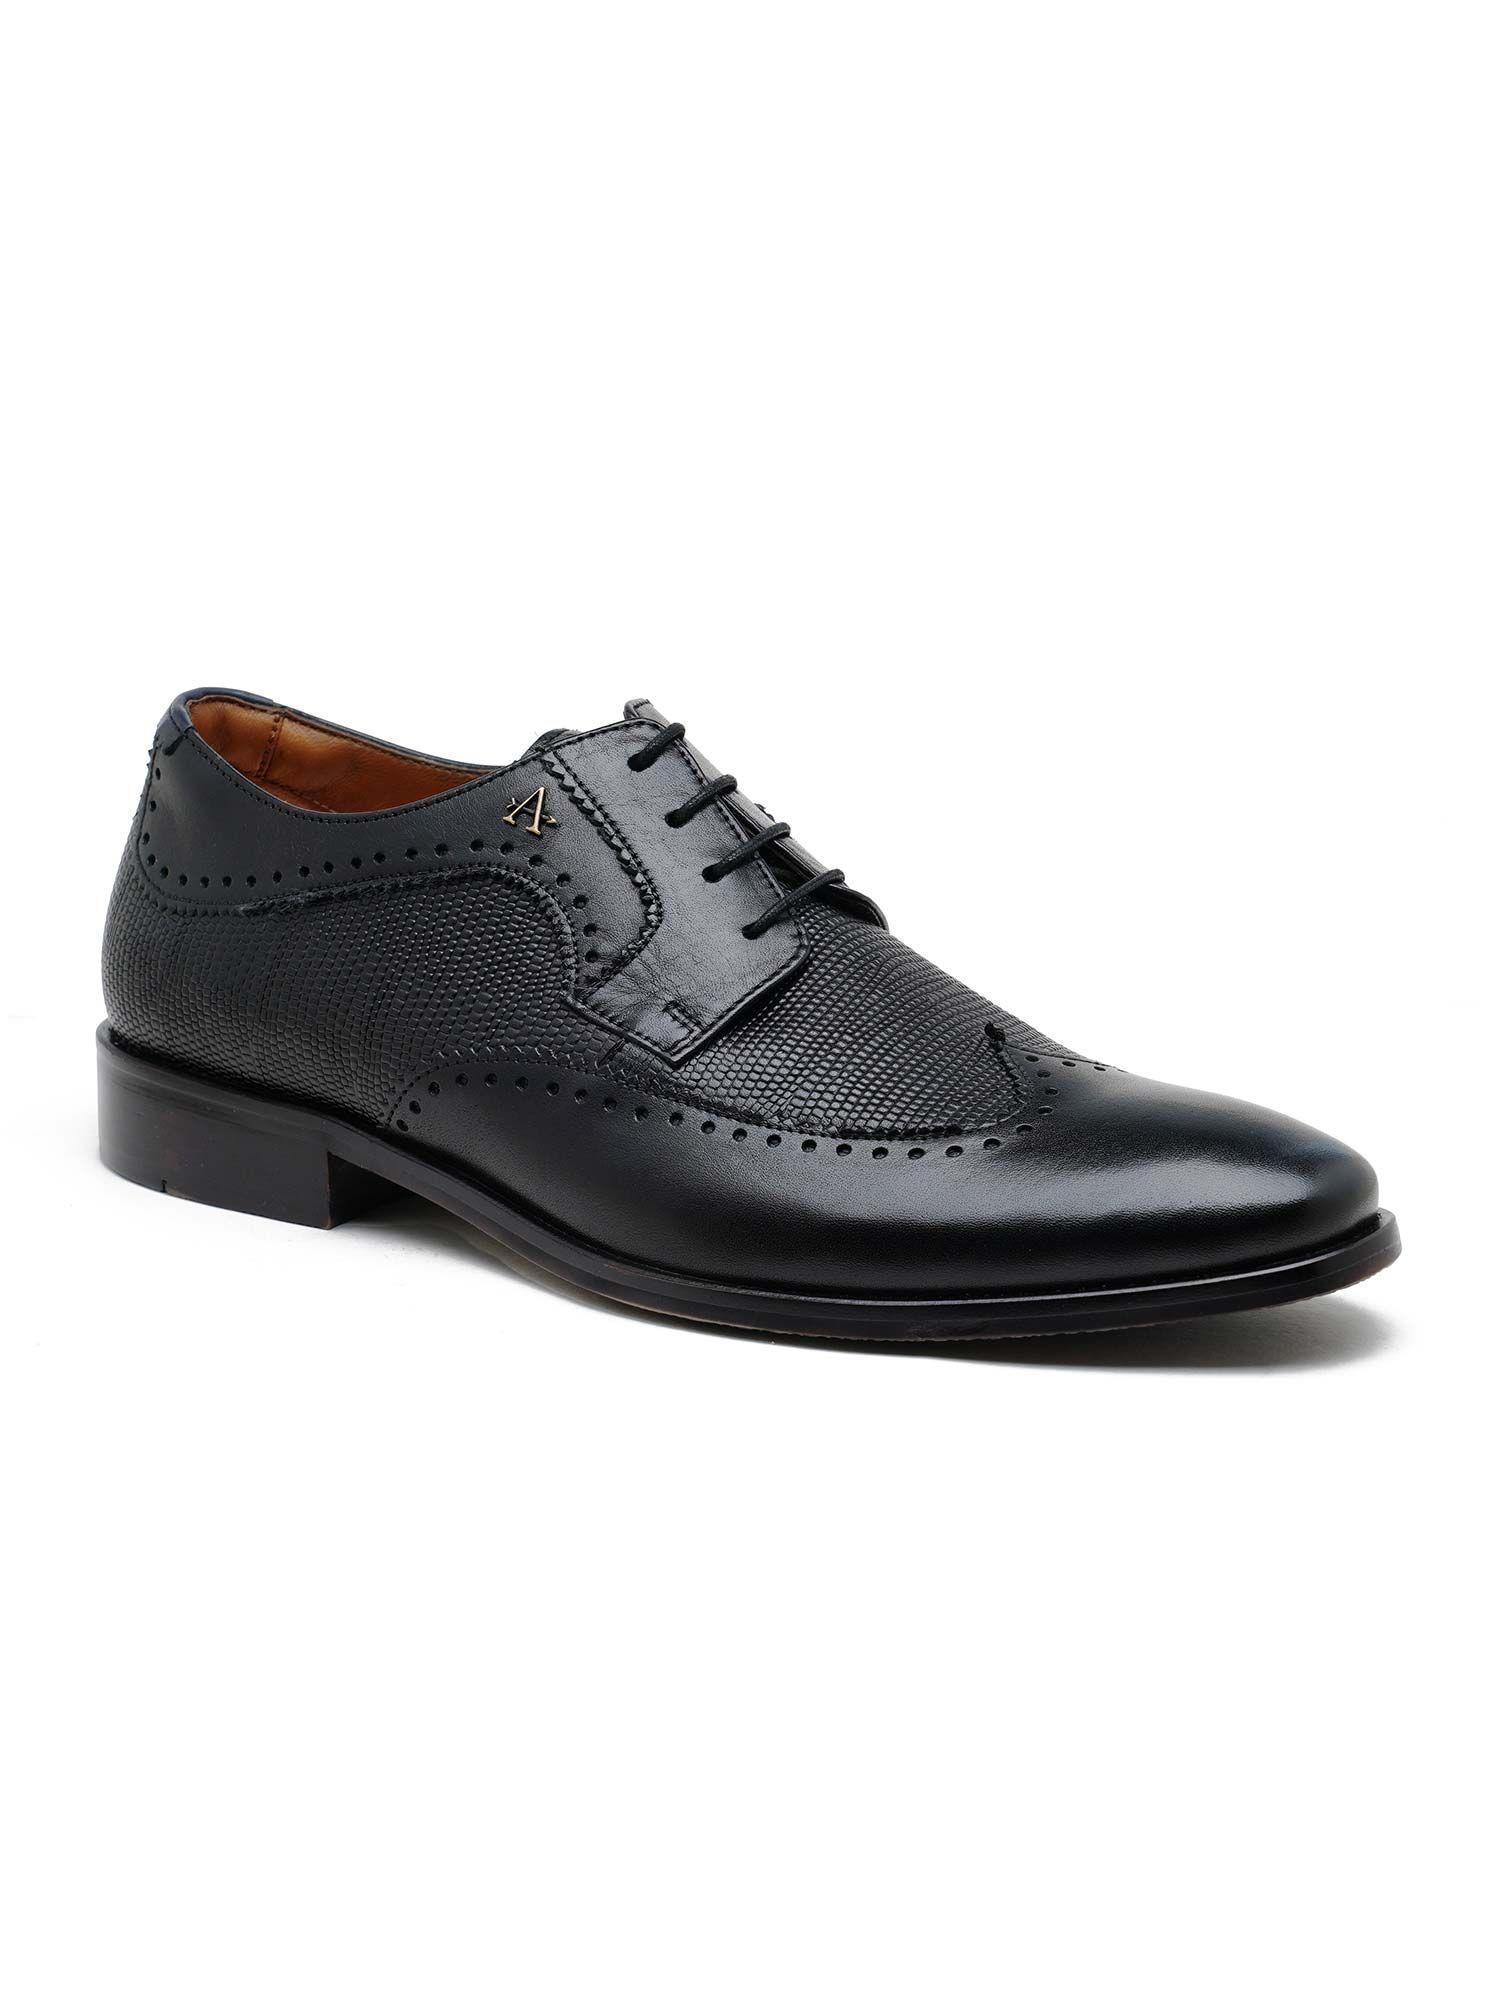 men boulder black formal lace up shoes